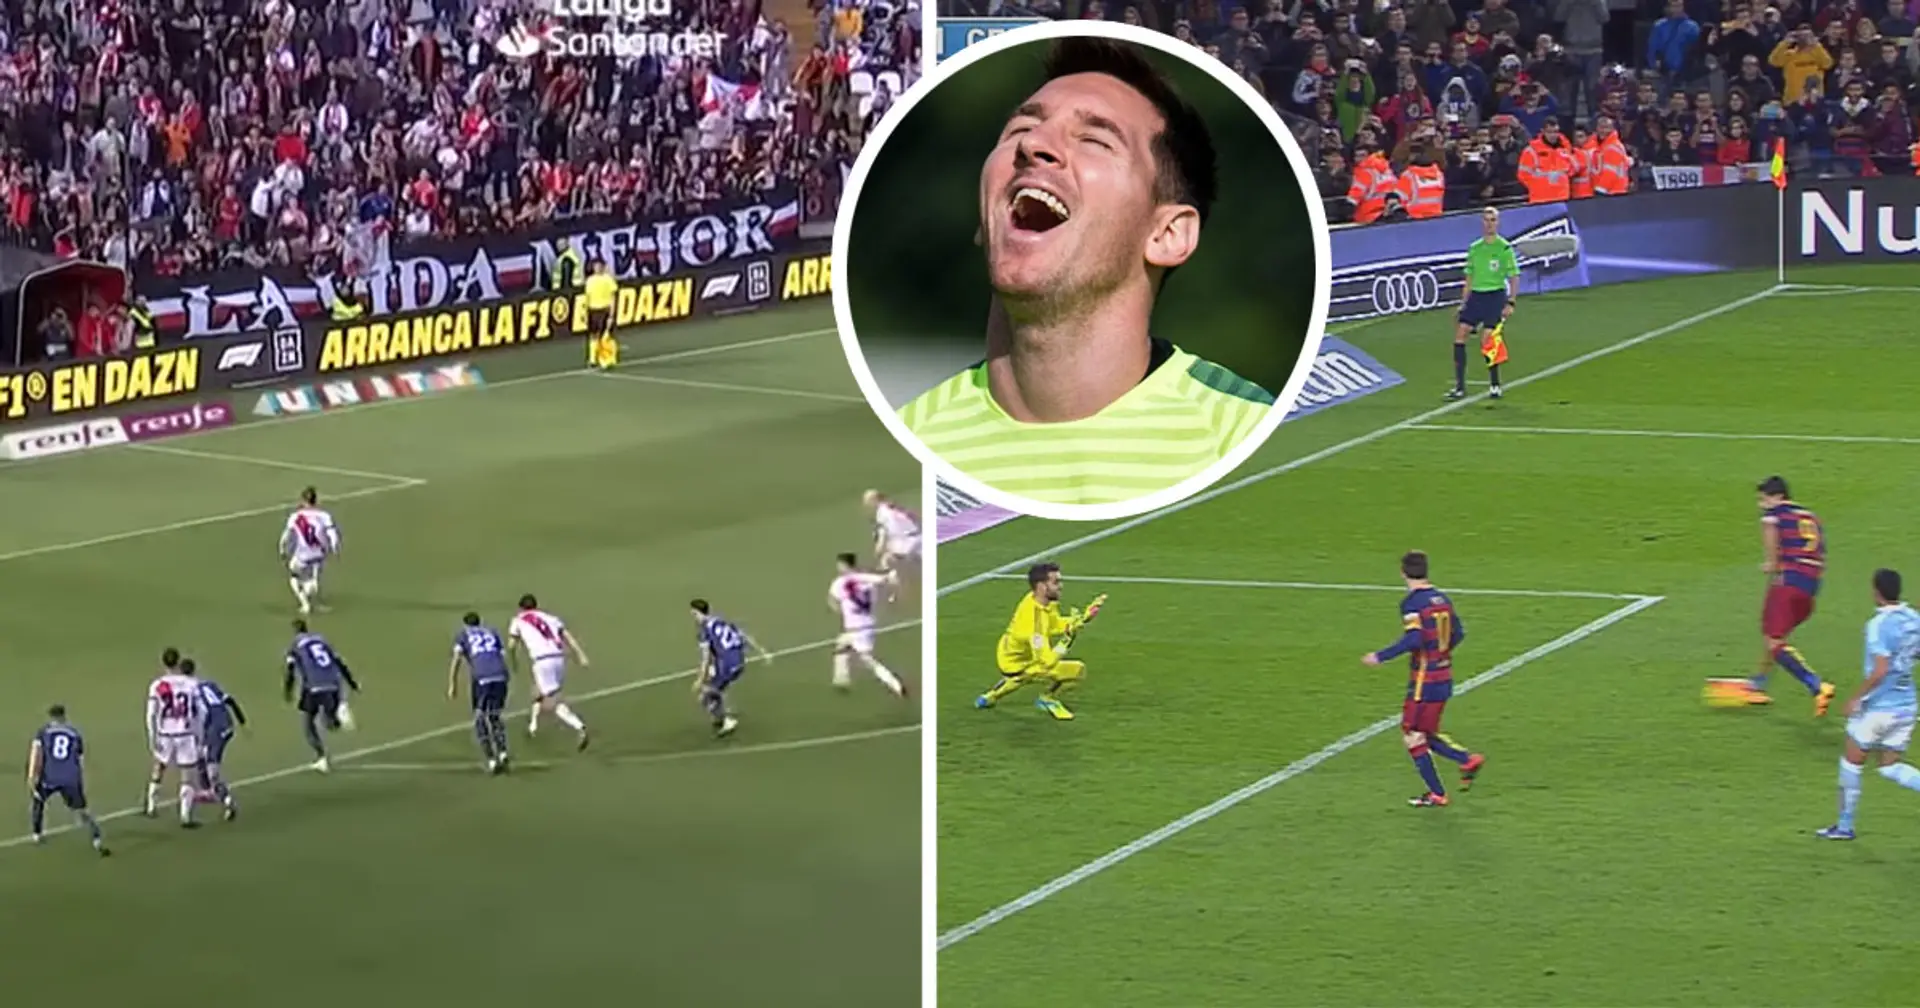 Rayo Vallecano duo attempt Messi-Suarez penalty kick, fail miserably 